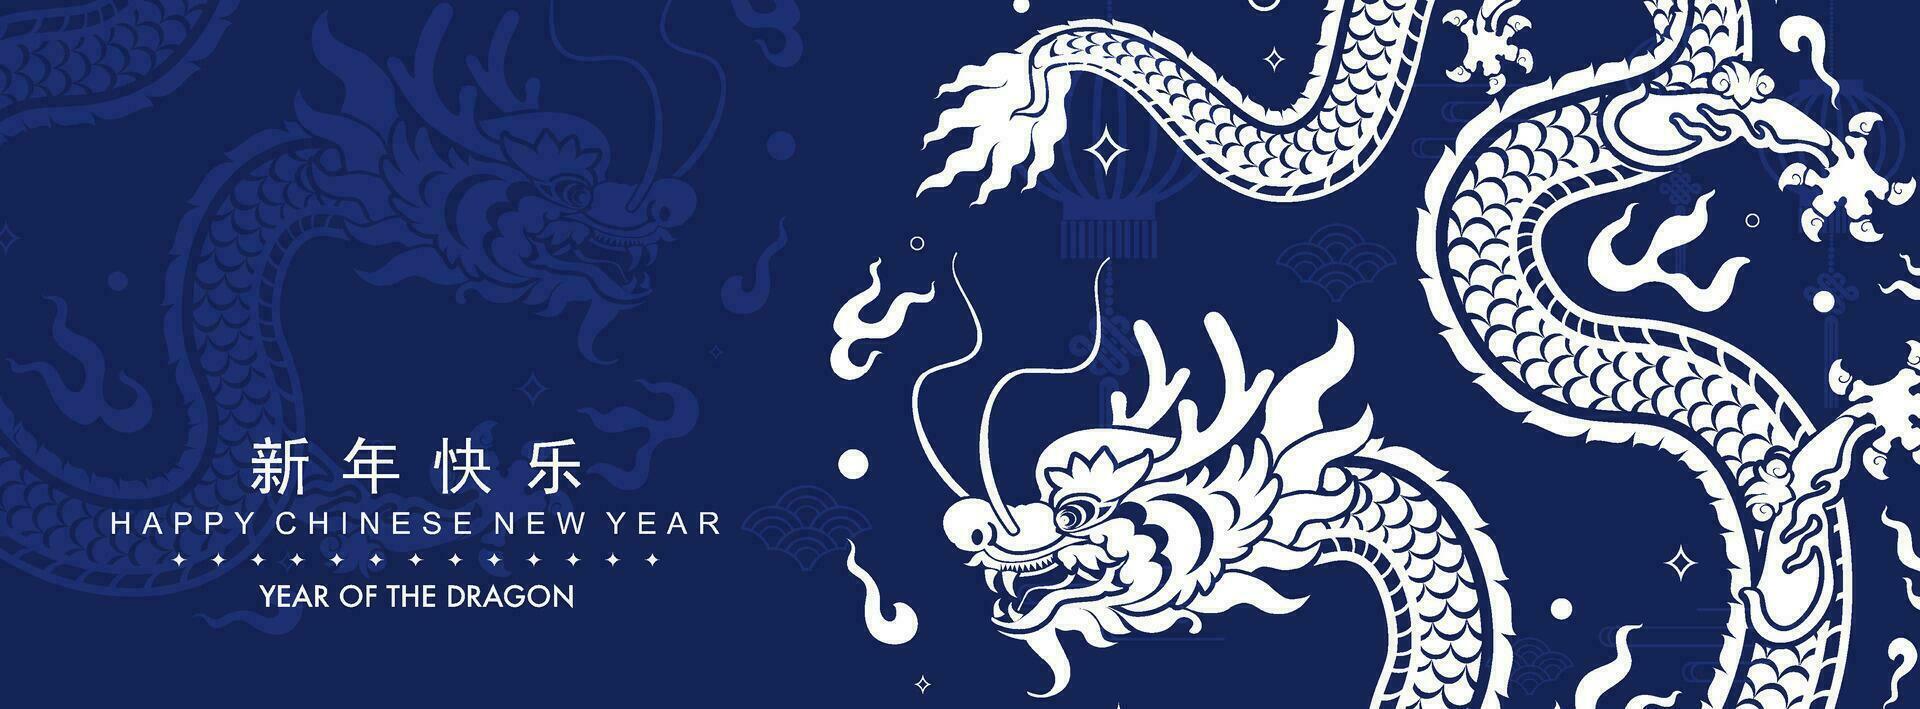 contento chino nuevo año 2024 el continuar zodíaco firmar con flor,linterna,asiática elementos vector